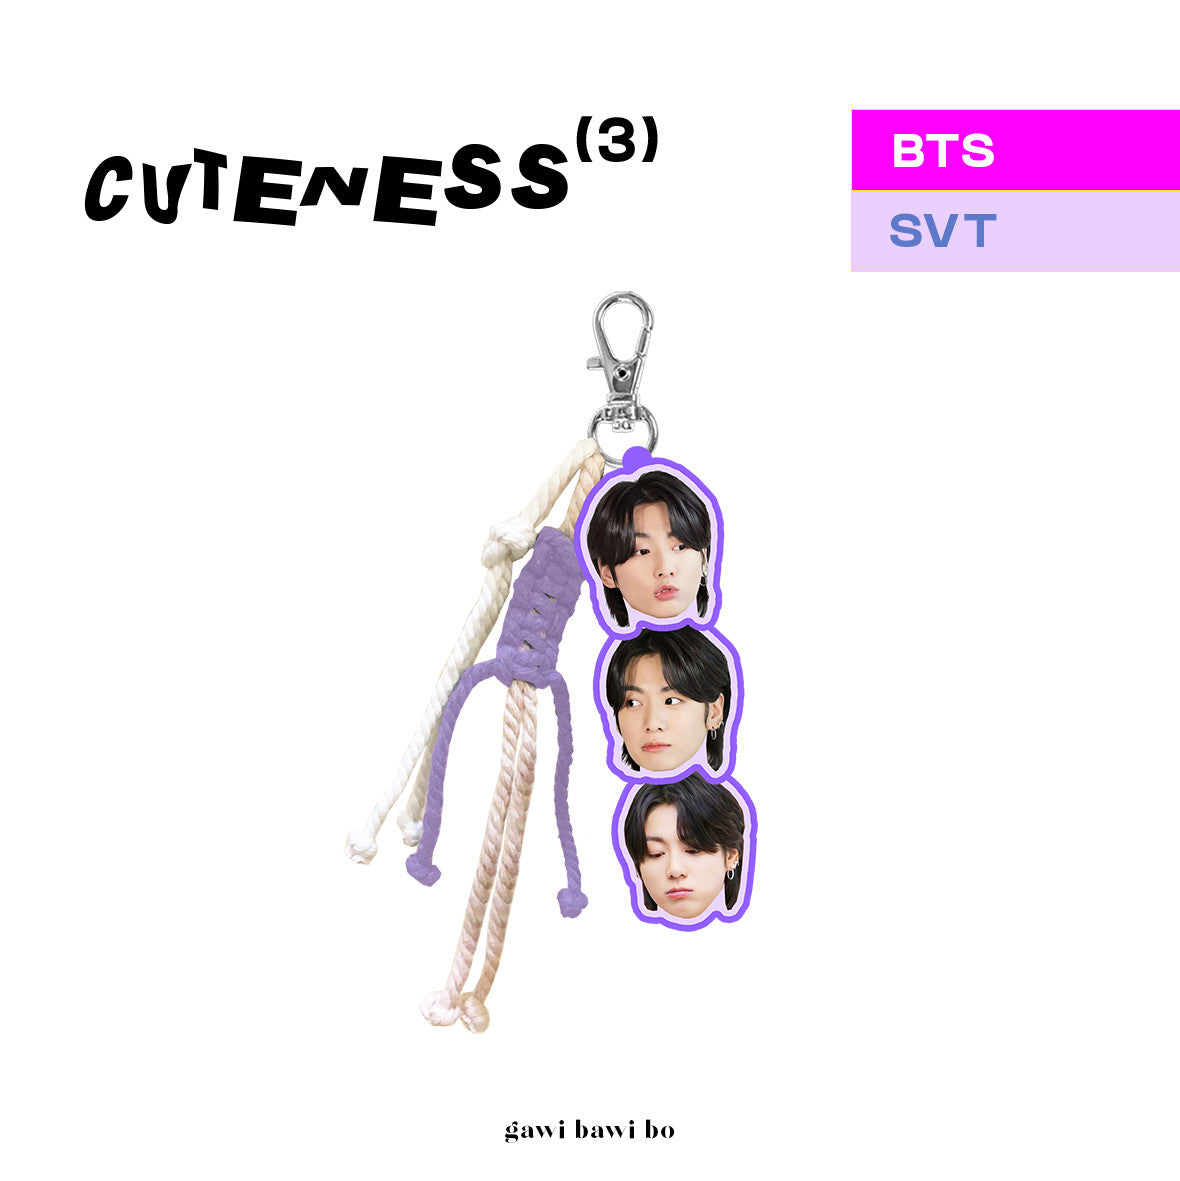 CuteneSS Braids - BTS Keychain